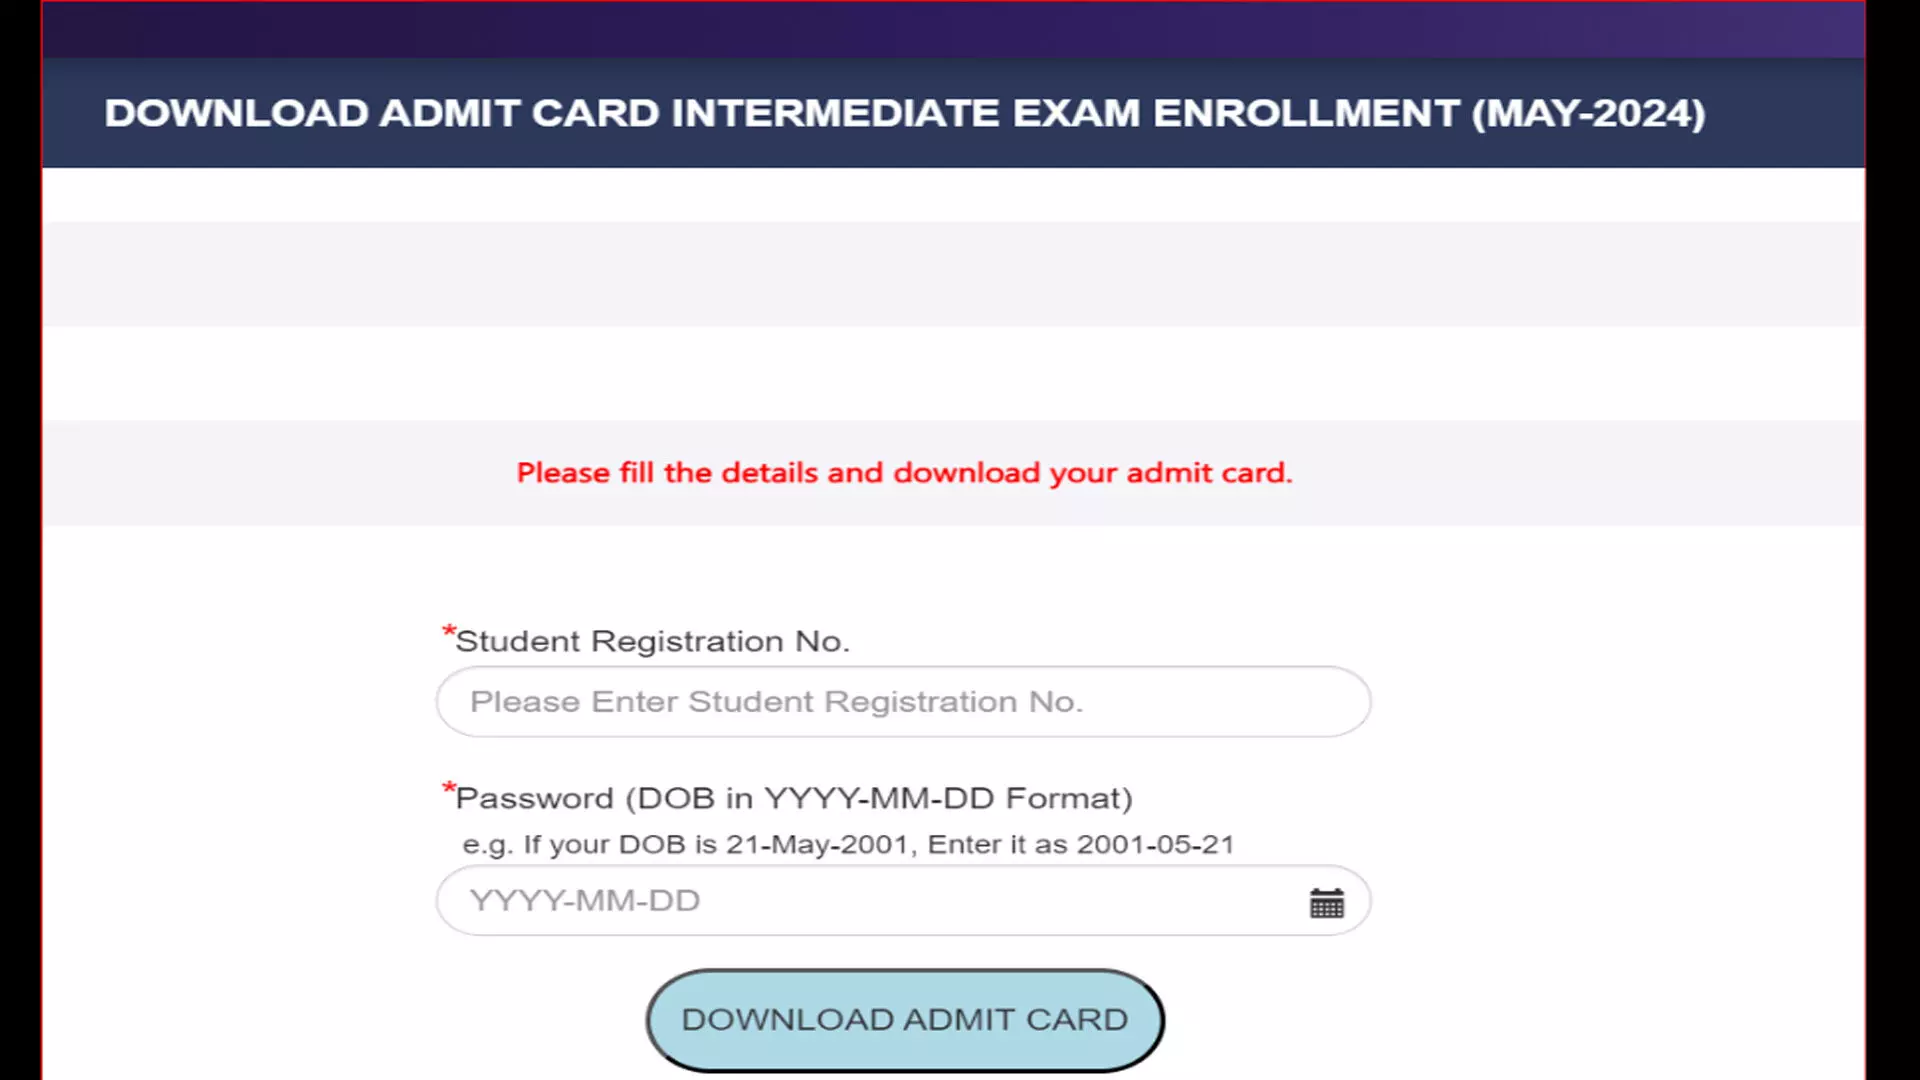 ICAI CA इंटरमीडिएट, फाइनल परीक्षा मई 2024 के एडमिट कार्ड जारी, चरण